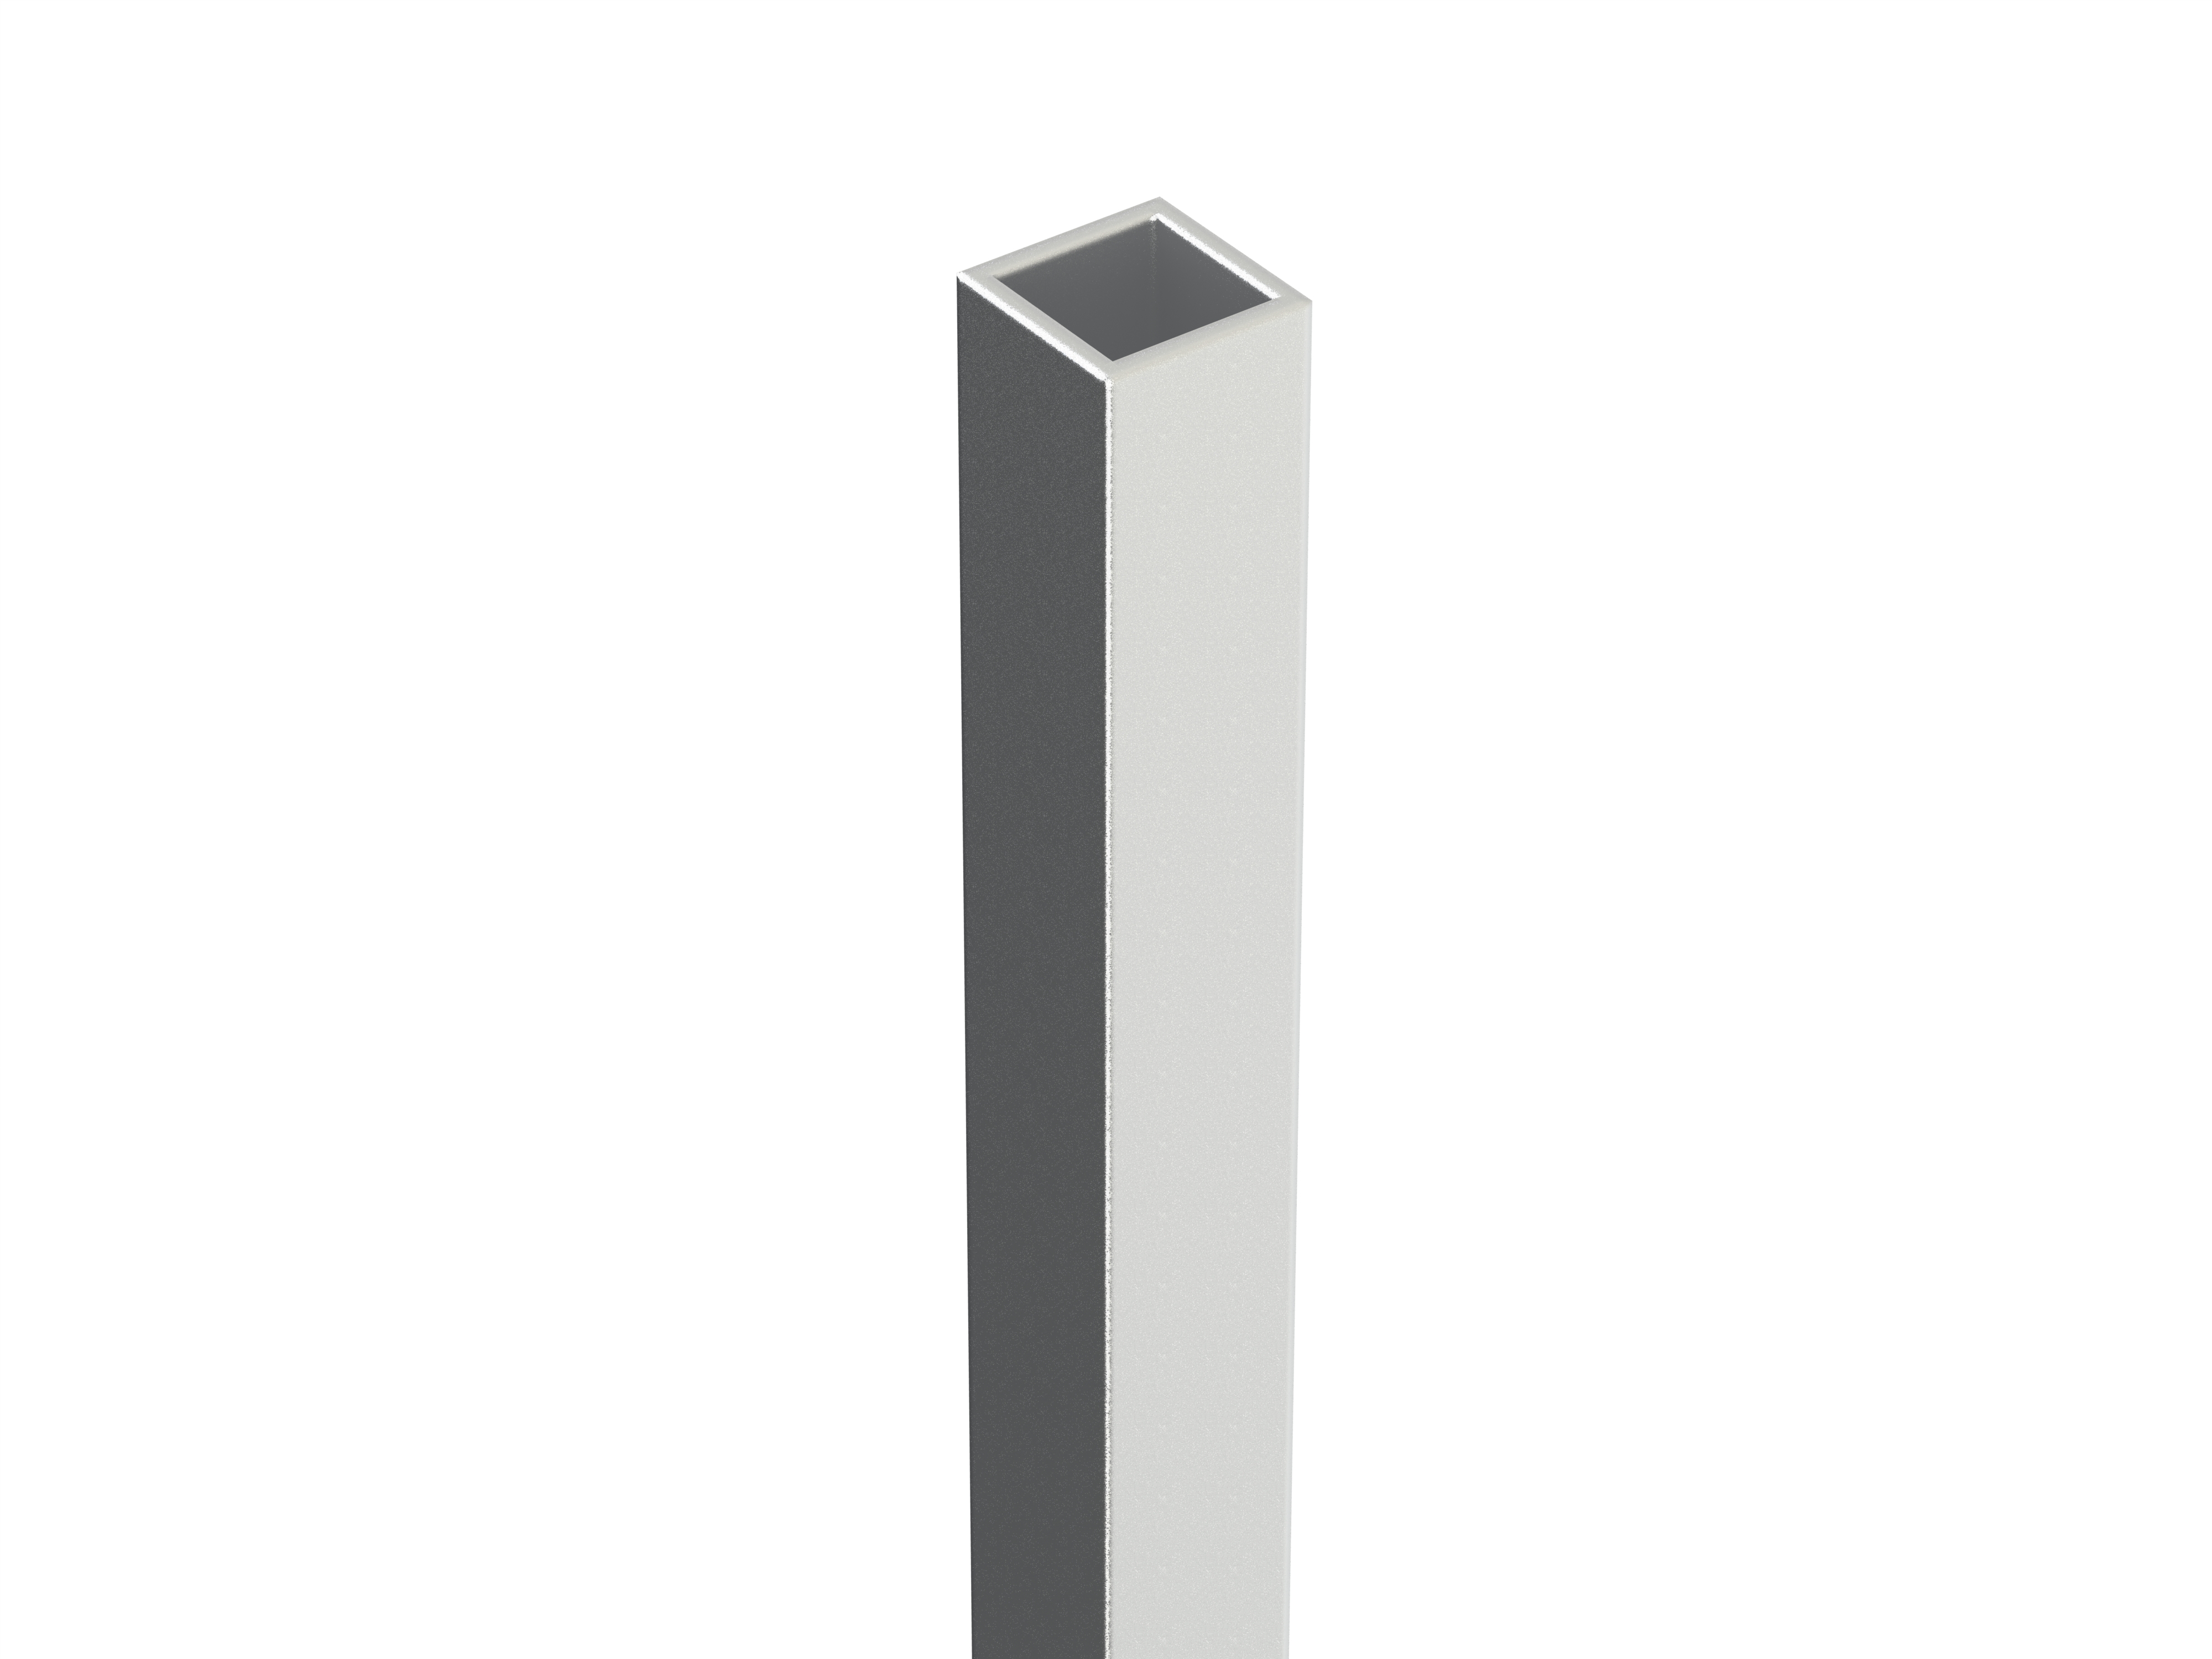 Pendant for Design OM, 500 mm aluminium, prewired